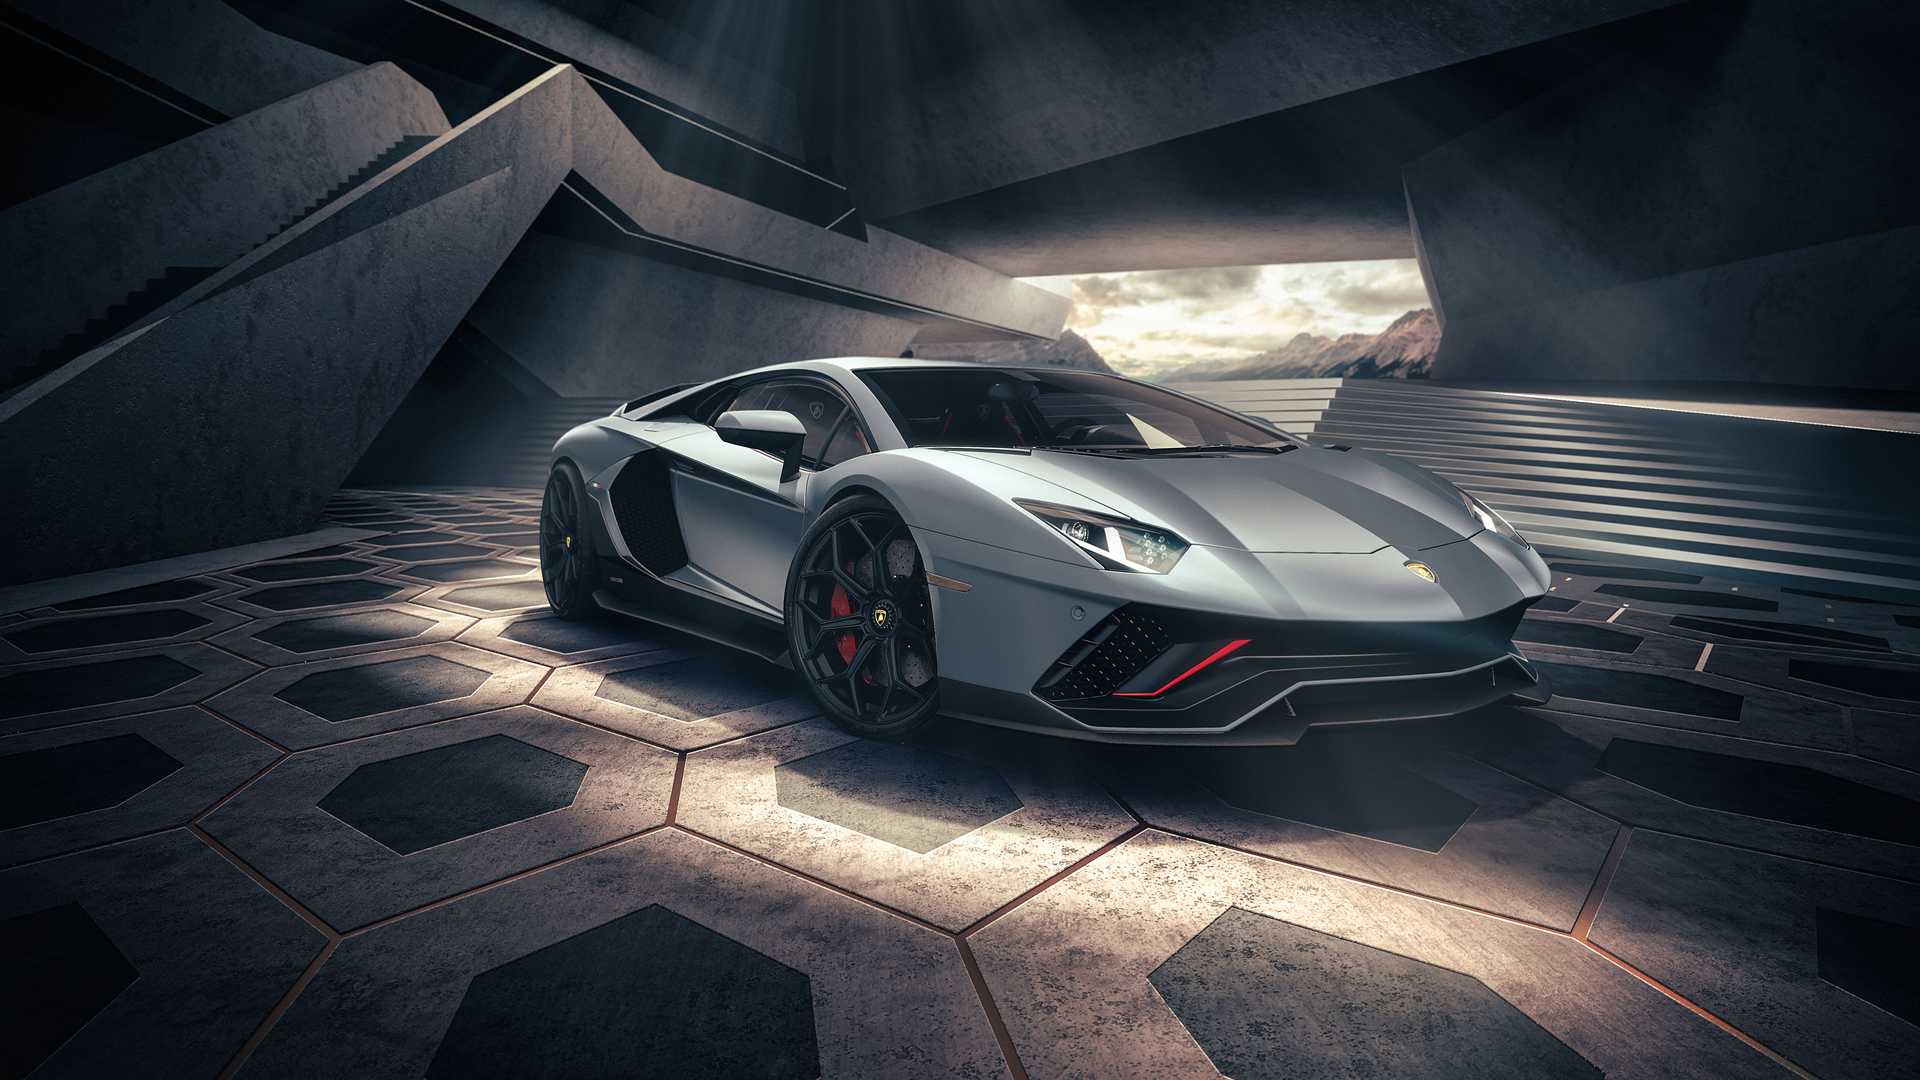 Hậu kỷ nguyên điện hóa, Lamborghini vẫn quyết tâm giữ lại yếu tố nào cho những siêu xe sau này? - Ảnh 3.